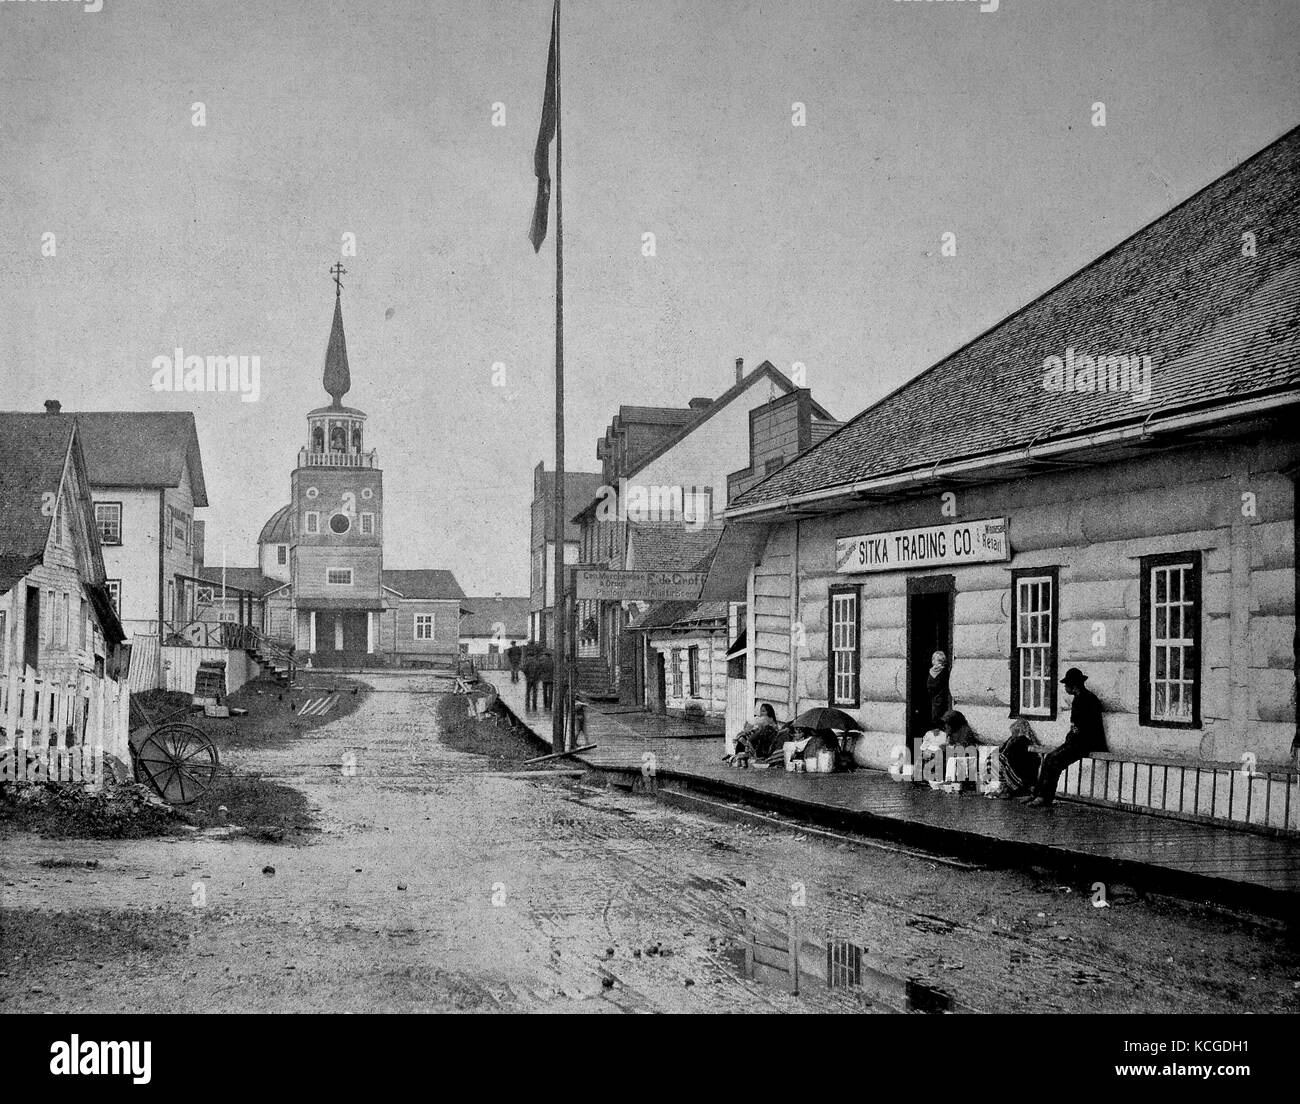 Vereinigte Staaten von Amerika, Straßenszene in der Mitte der Stadt Sitka an einem regnerischen Tag, Menschen vor einem Geschäft und die Kirche am Ende der Straße, Alaska sitzen, digital verbesserte Reproduktion einer historischen Foto aus dem (geschätzten) Jahr 1899 Stockfoto